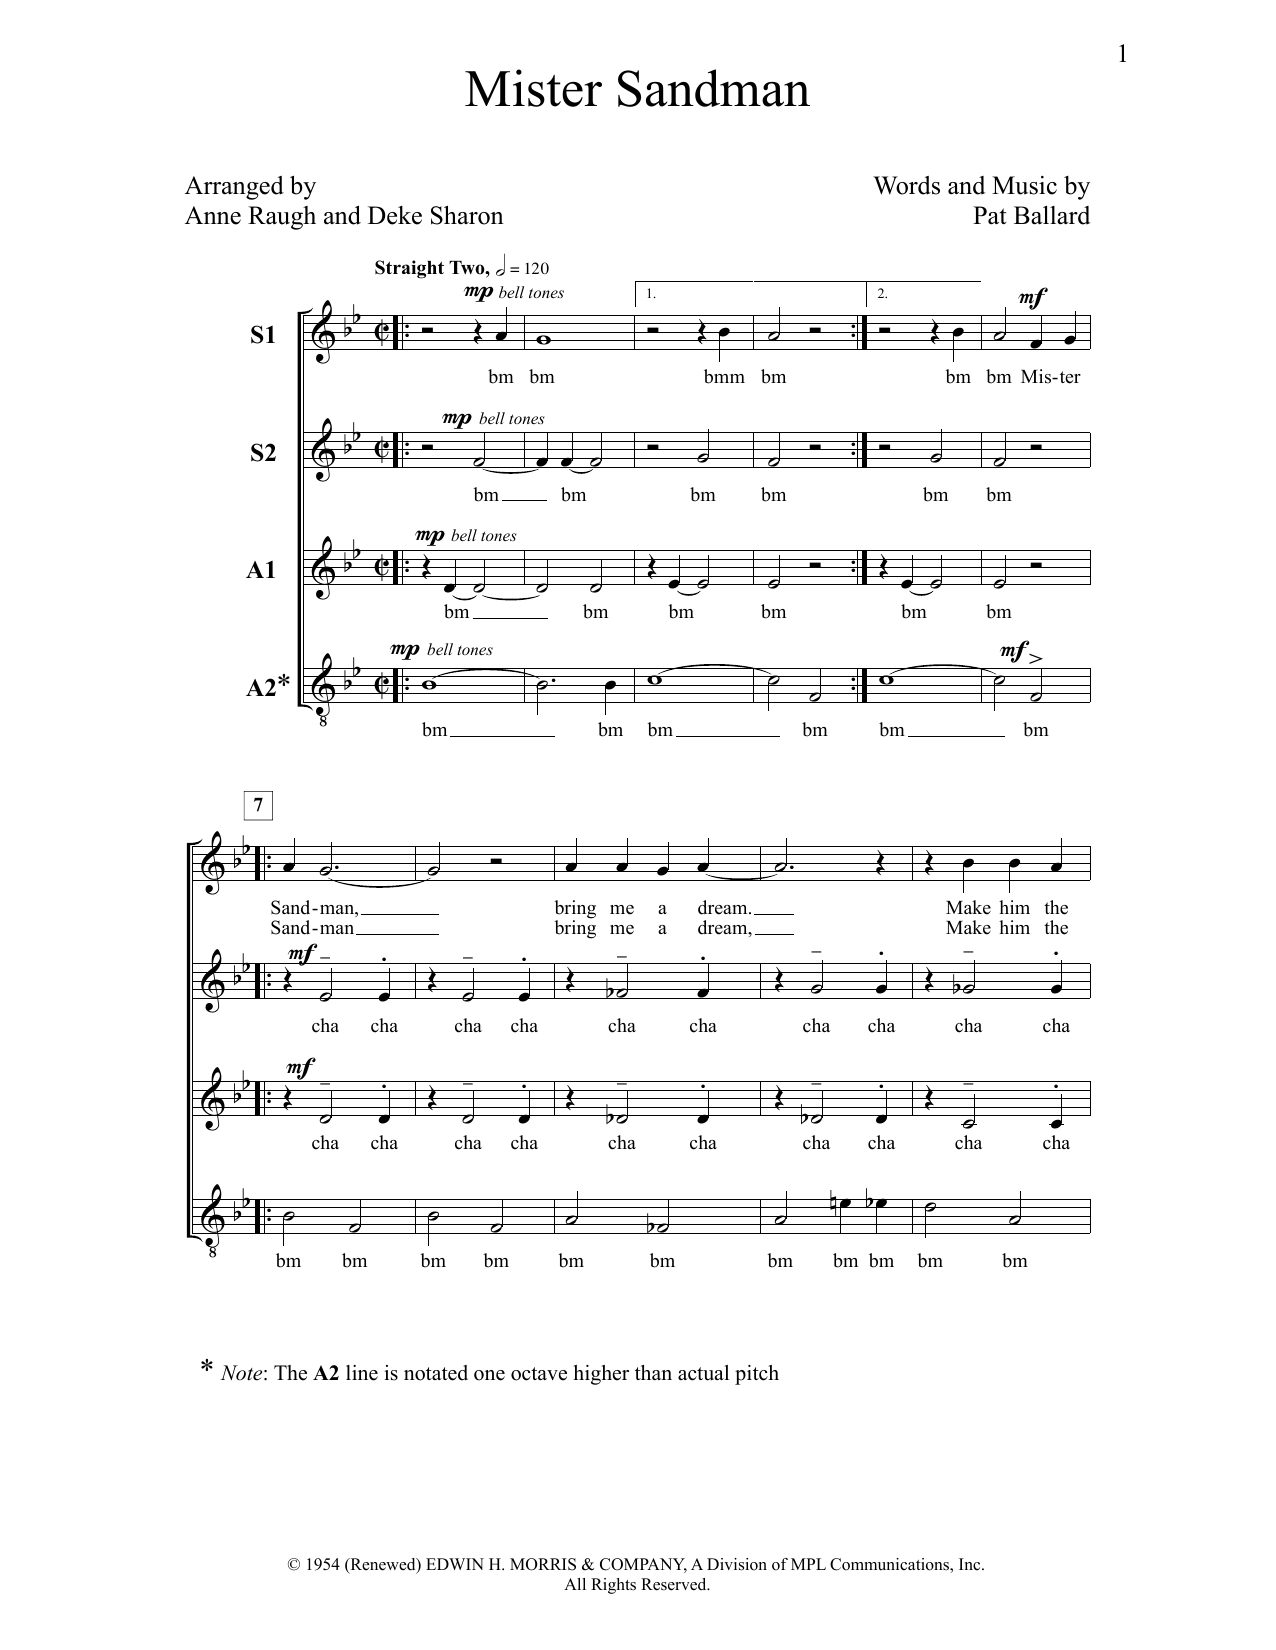 Deke Sharon Mister Sandman Sheet Music Notes & Chords for Choral - Download or Print PDF